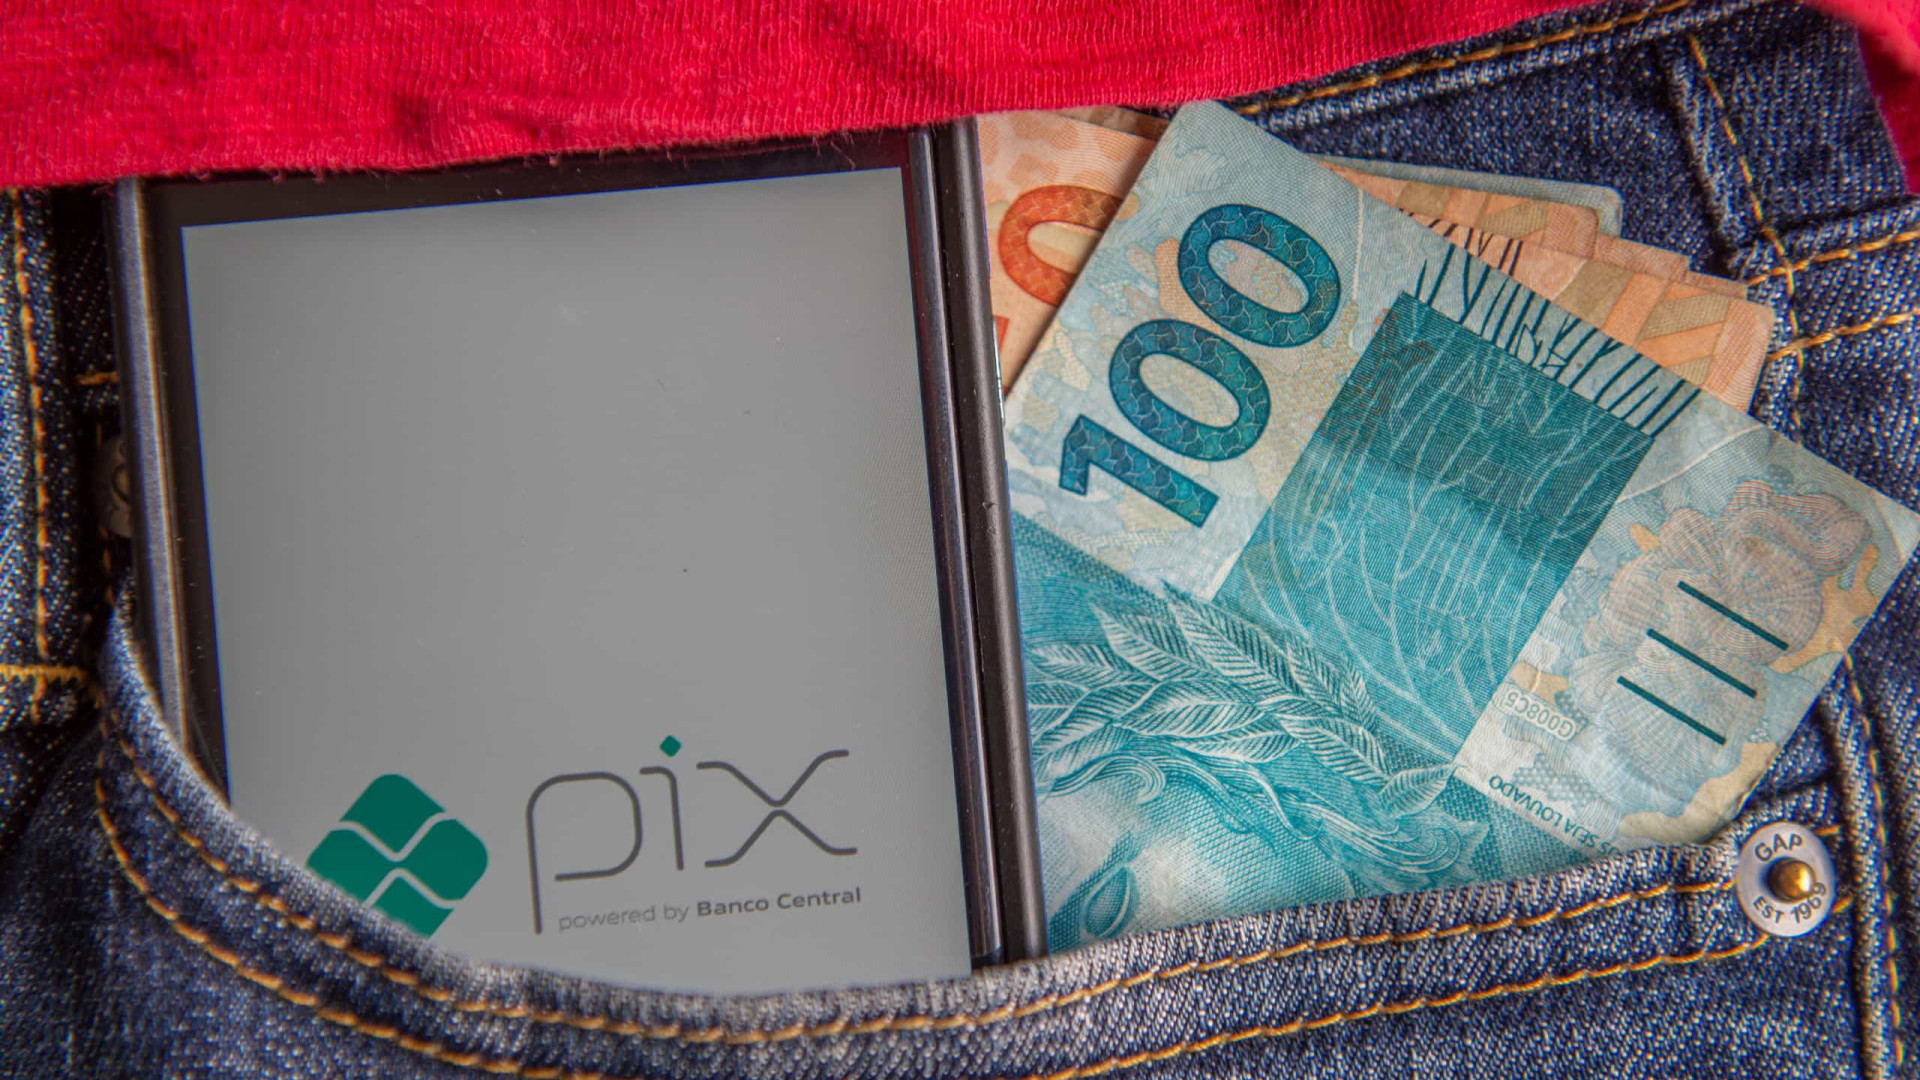 Novo golpe do Pix promete renda extra por tarefas online; veja cuidados